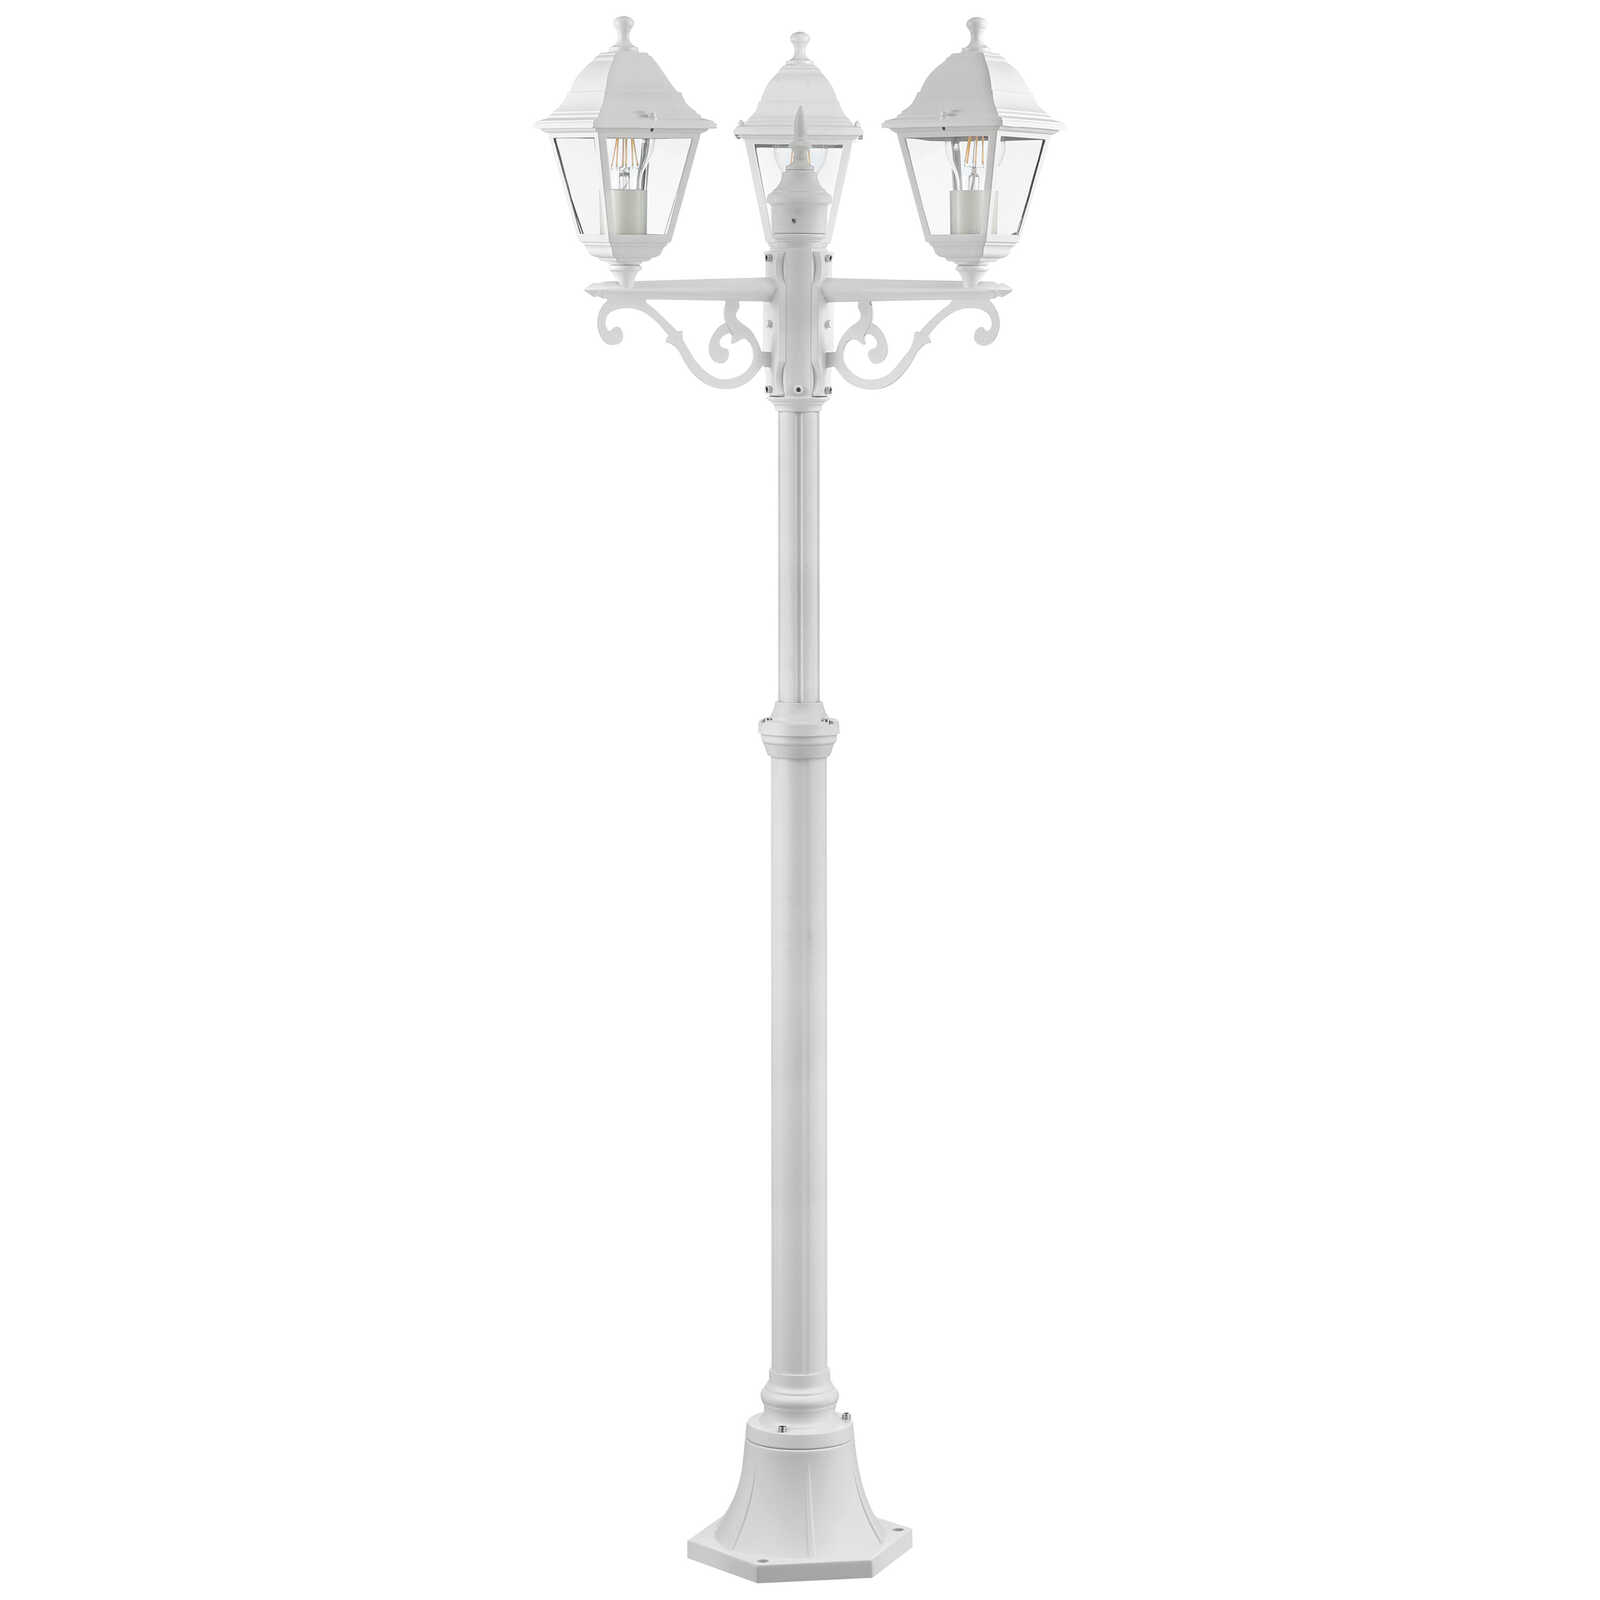             Lámpara de pie de exterior de cristal - Luis 1 - Blanco
        